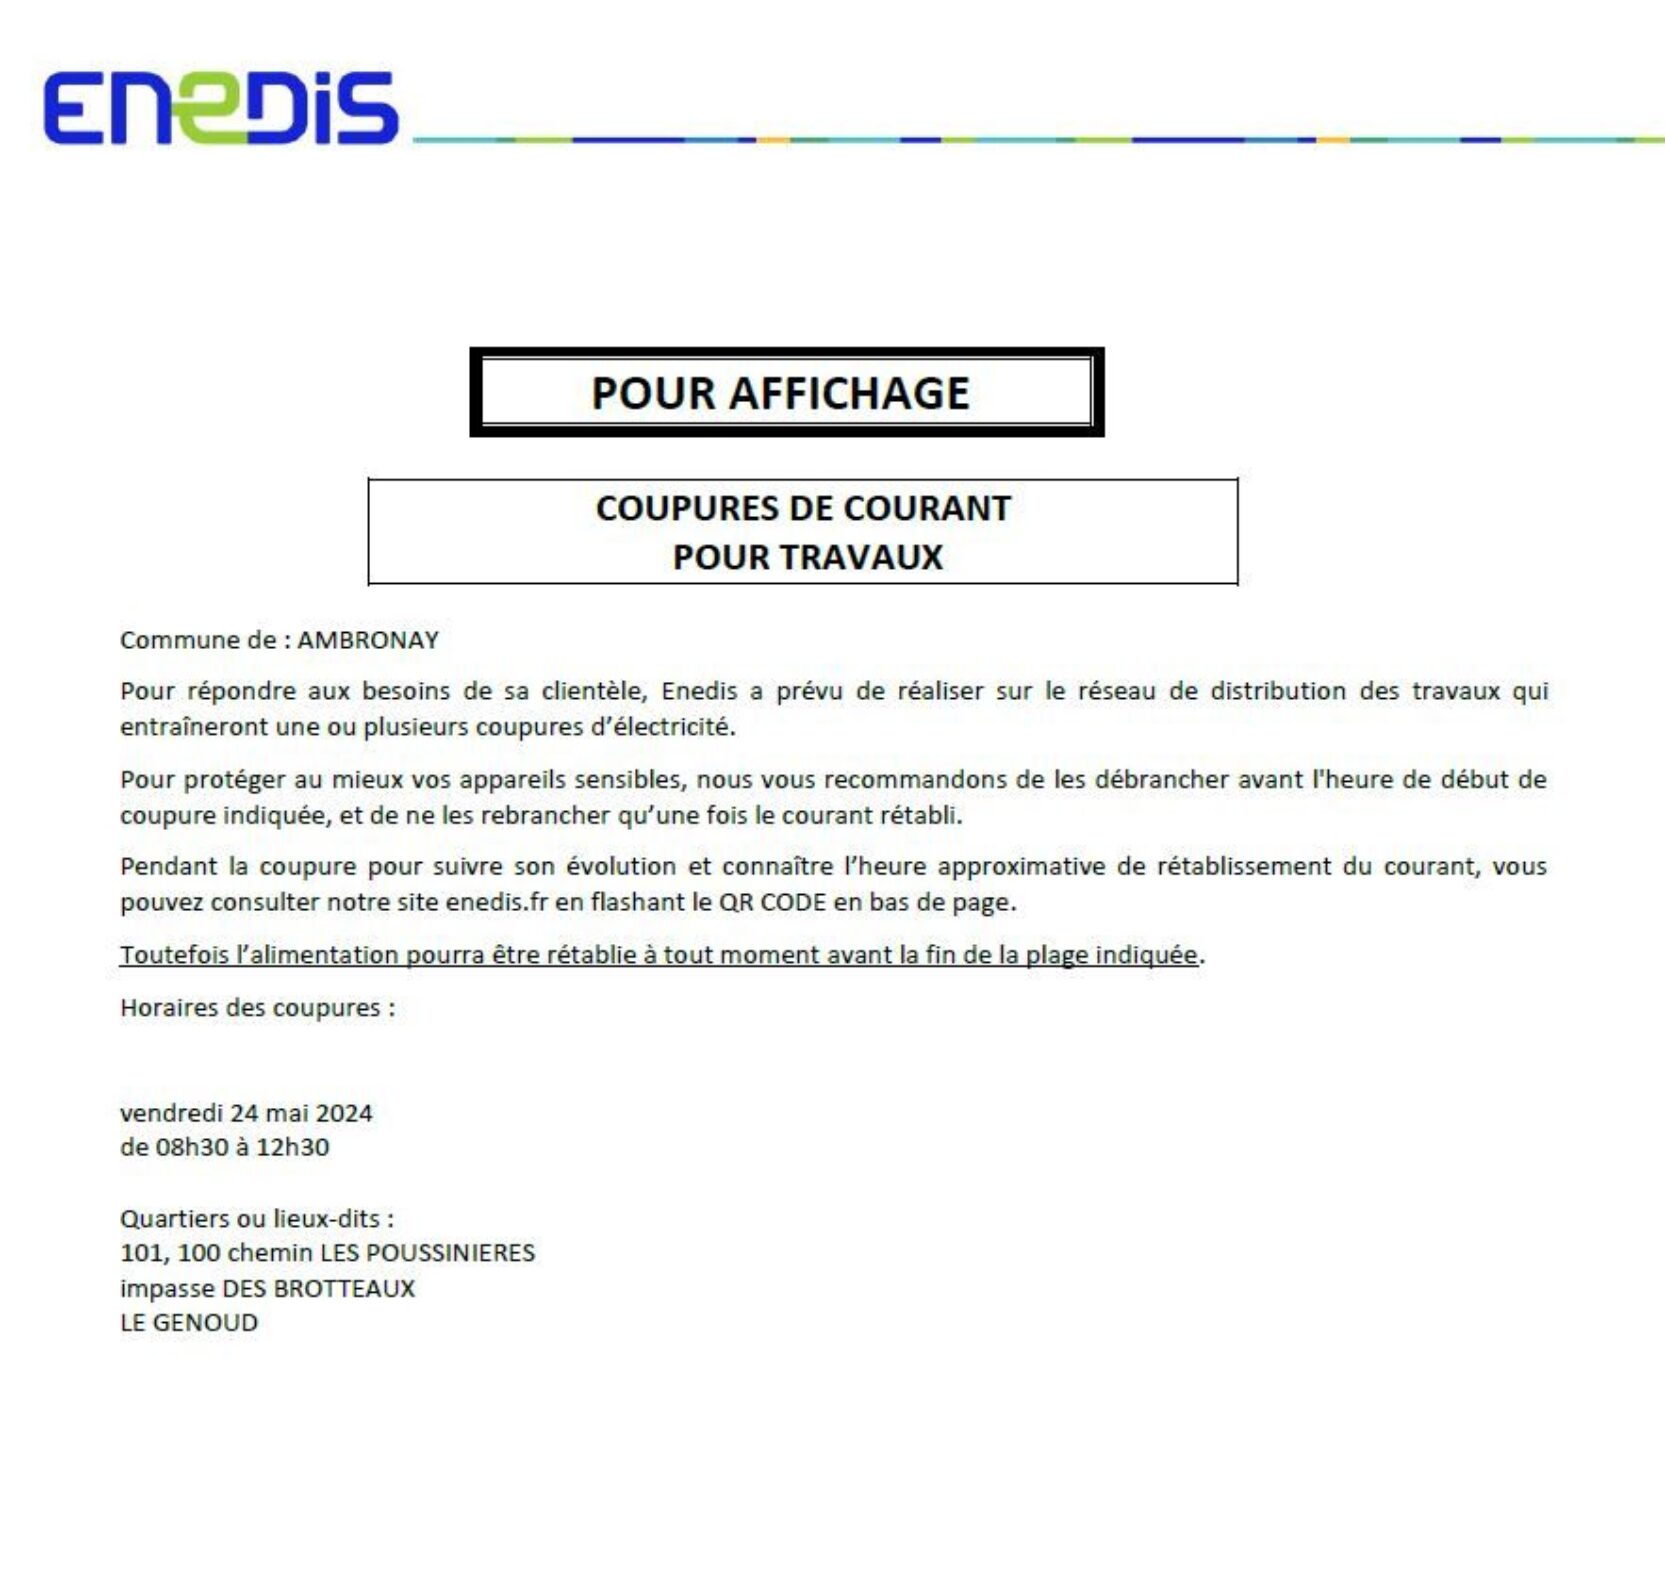 ENEDIS nous informe qu'une coupure d’électricité aura lieu le vendredi 24 mai 2024 de 8h30 à 12h30 📍 Le Genoud 📍 100, 101 Chemin des Poussinières 📍 Impasse des Brotteaux